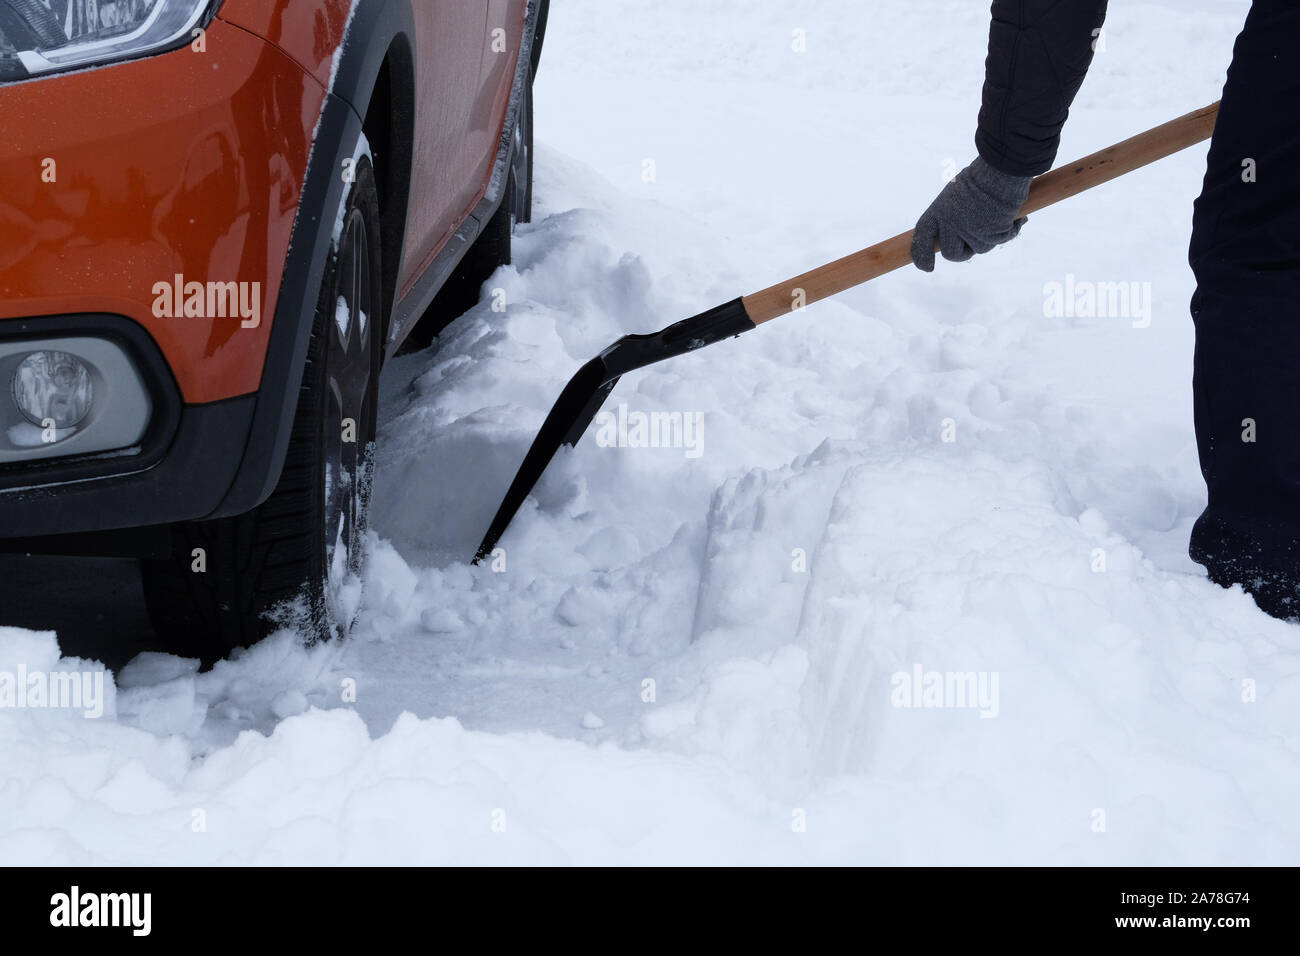 https://c8.alamy.com/compde/2a78g74/winter-schnee-fahrzeug-mann-bursten-und-schneeschaufeln-neben-orange-auto-im-winter-nach-schneefall-schaufel-in-der-hand-2a78g74.jpg